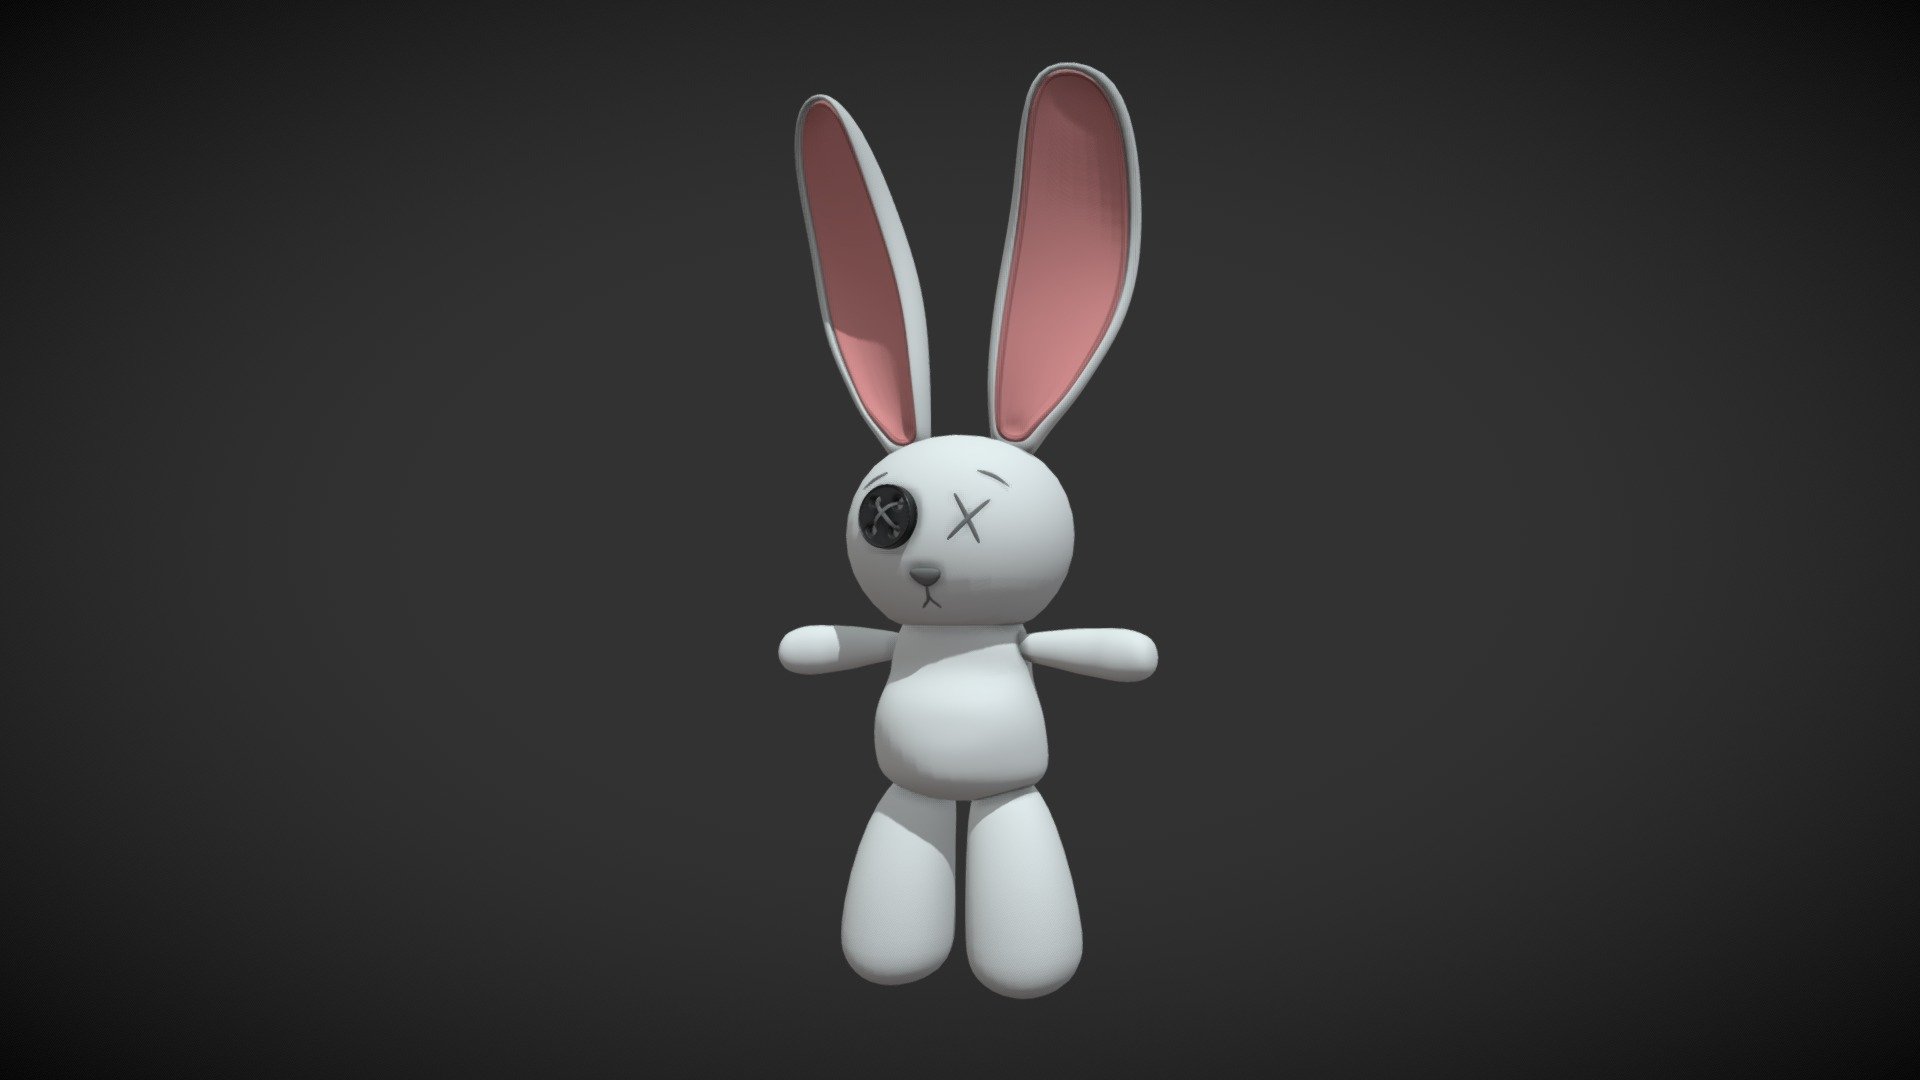 Conejo de peluche estilo cartoon basado en una imagen de otro artista.

Creditos imagen: https://co.pinterest.com/pin/530861874825027698/ - Rabbit plush / Conejo Peluche - Download Free 3D model by Andres Zuluaga (@afzmtm) 3d model